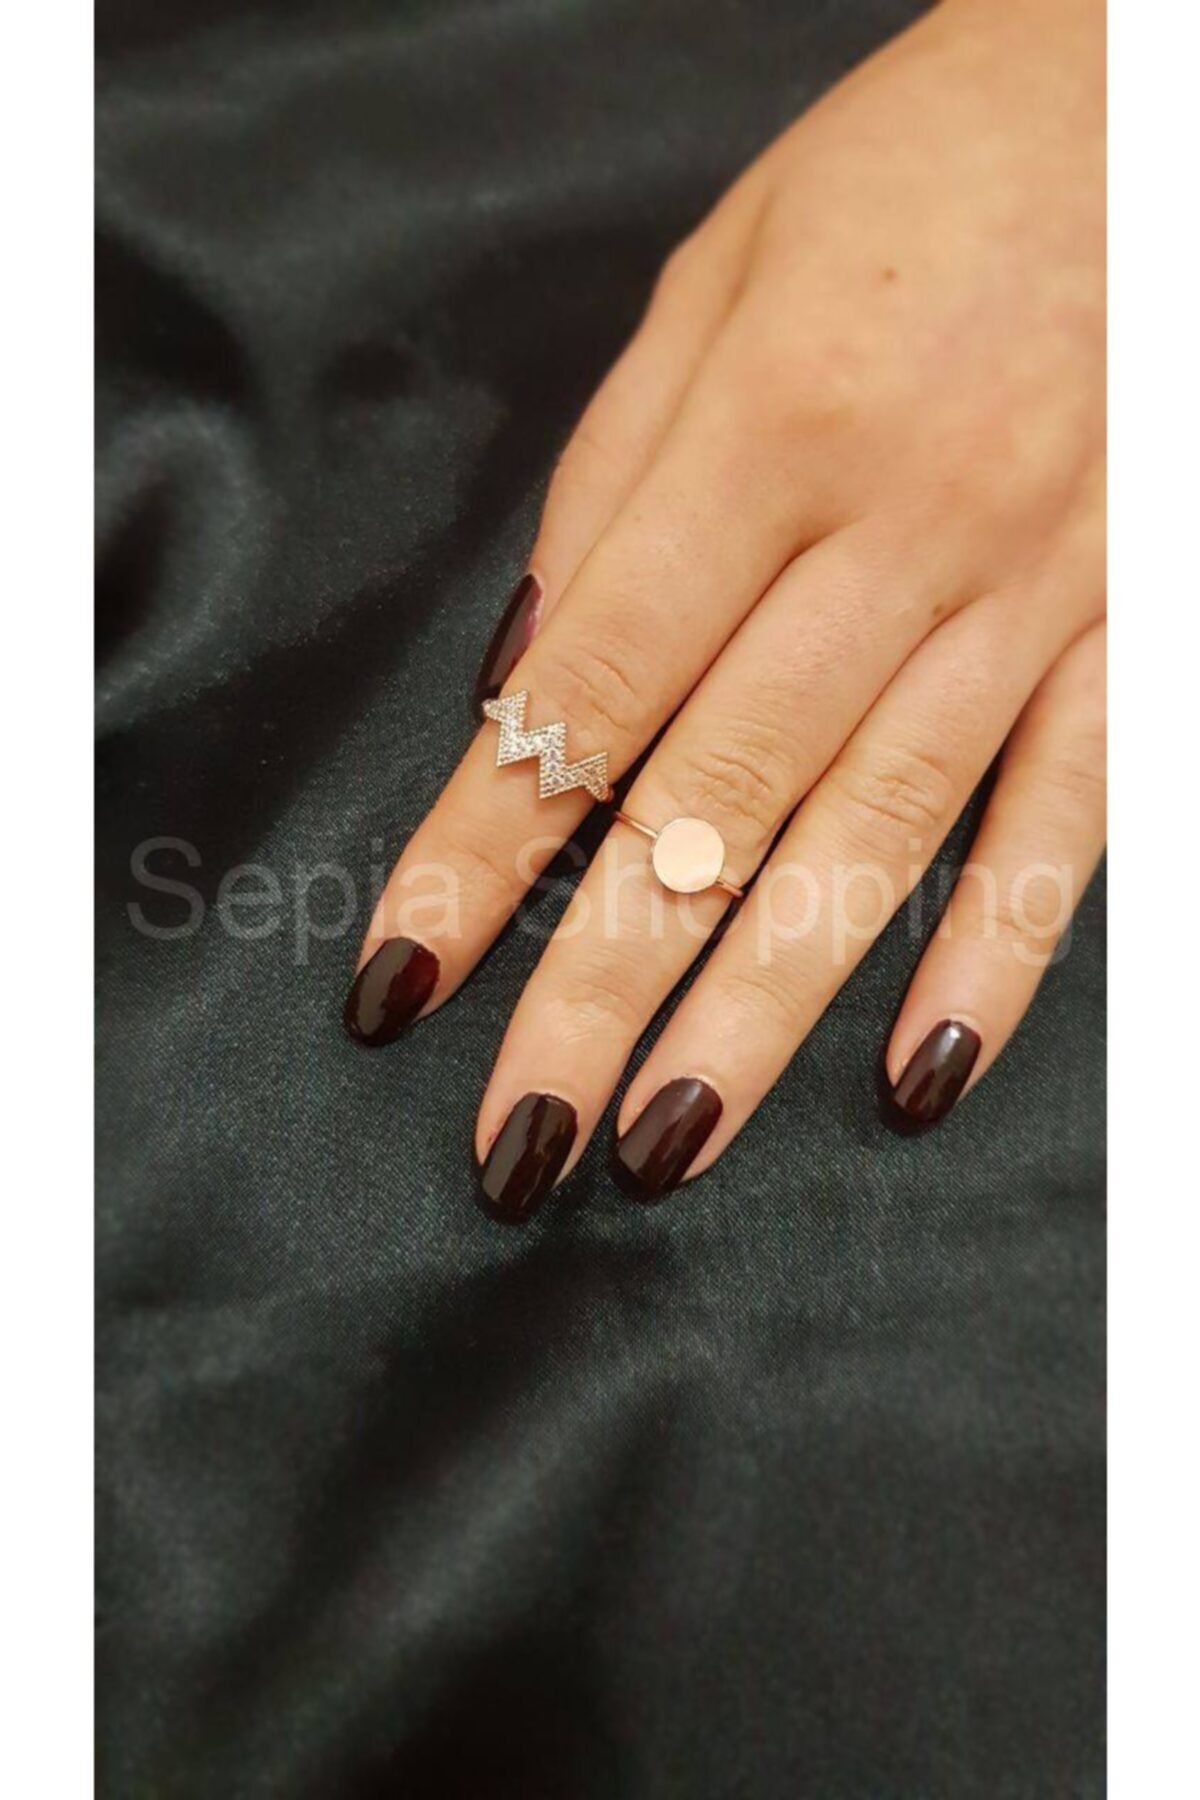 Sepia Shopping Kadın Zirkon Taşlı Eklem Yüzüğü